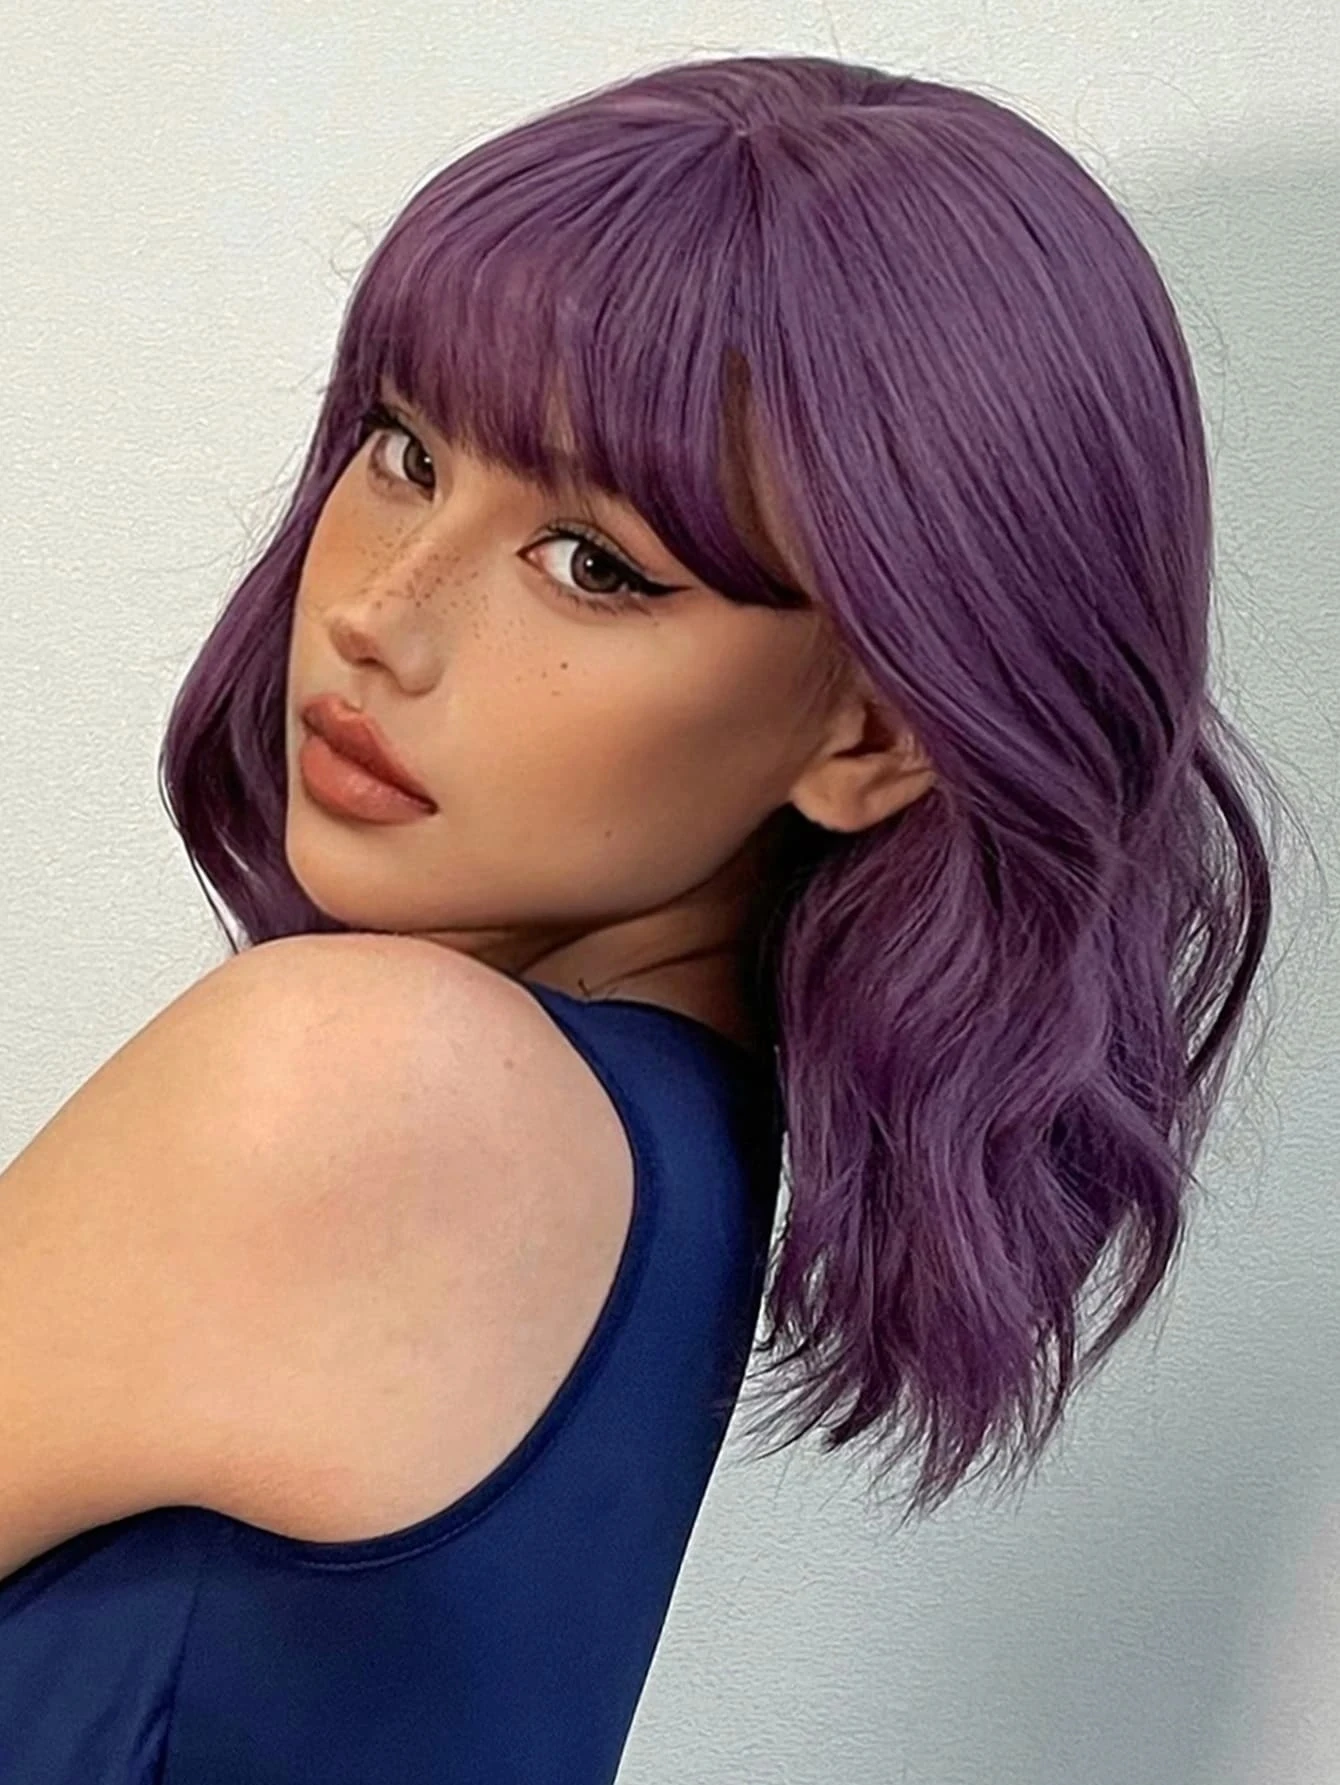 tny lana perruque synthétique courte bouclée avec violette pour femmes cheveux naturels résistants la chaleur